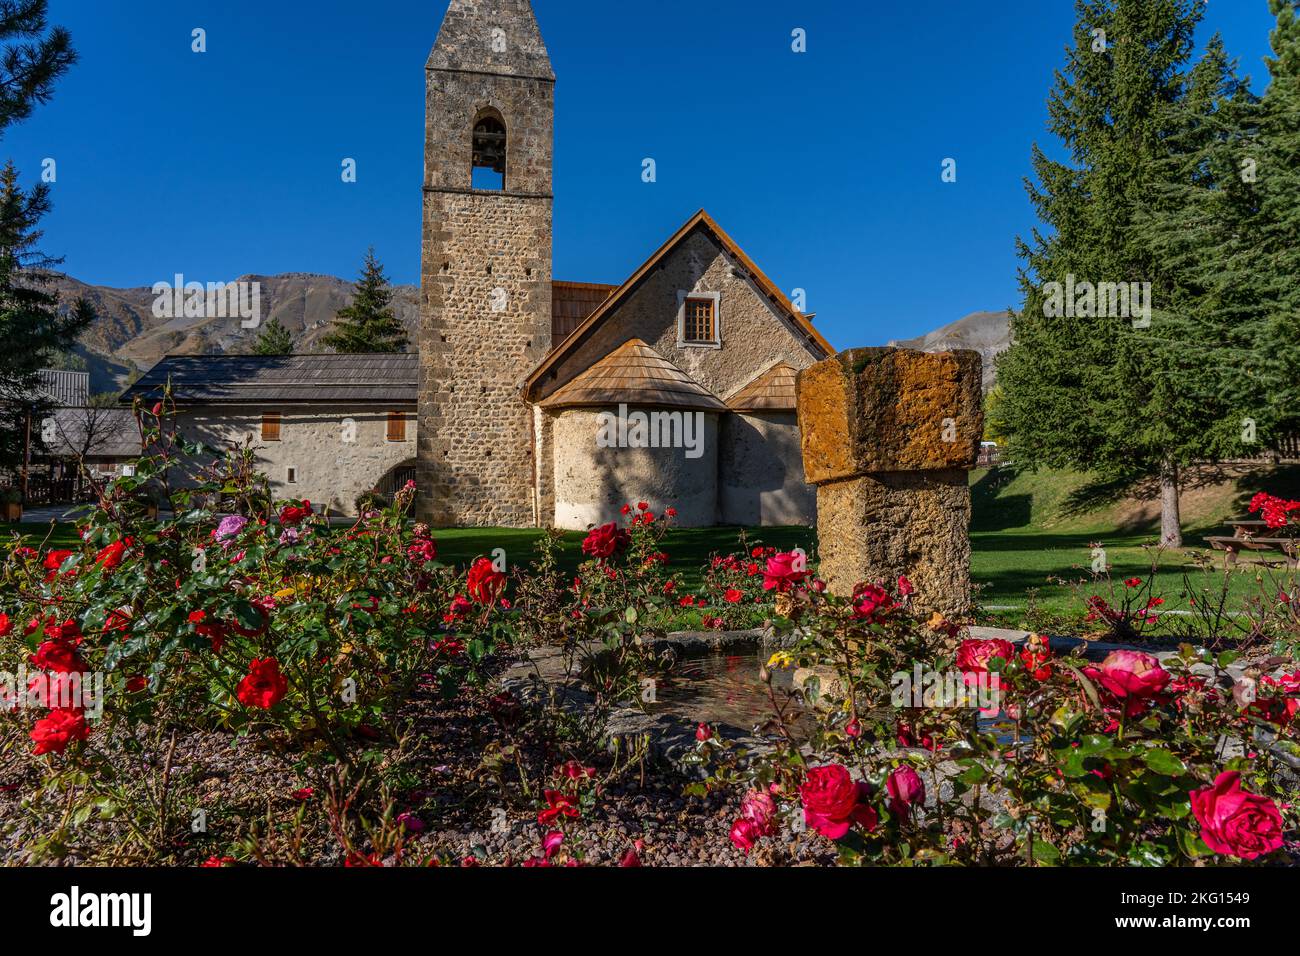 Rosengarten in der Nähe der Kirche in der französischen Bergstadt. Ländliche Landschaft in der Nähe eines berühmten französischen Resorts Auron, Europa. Hochwertige Fotos Stockfoto